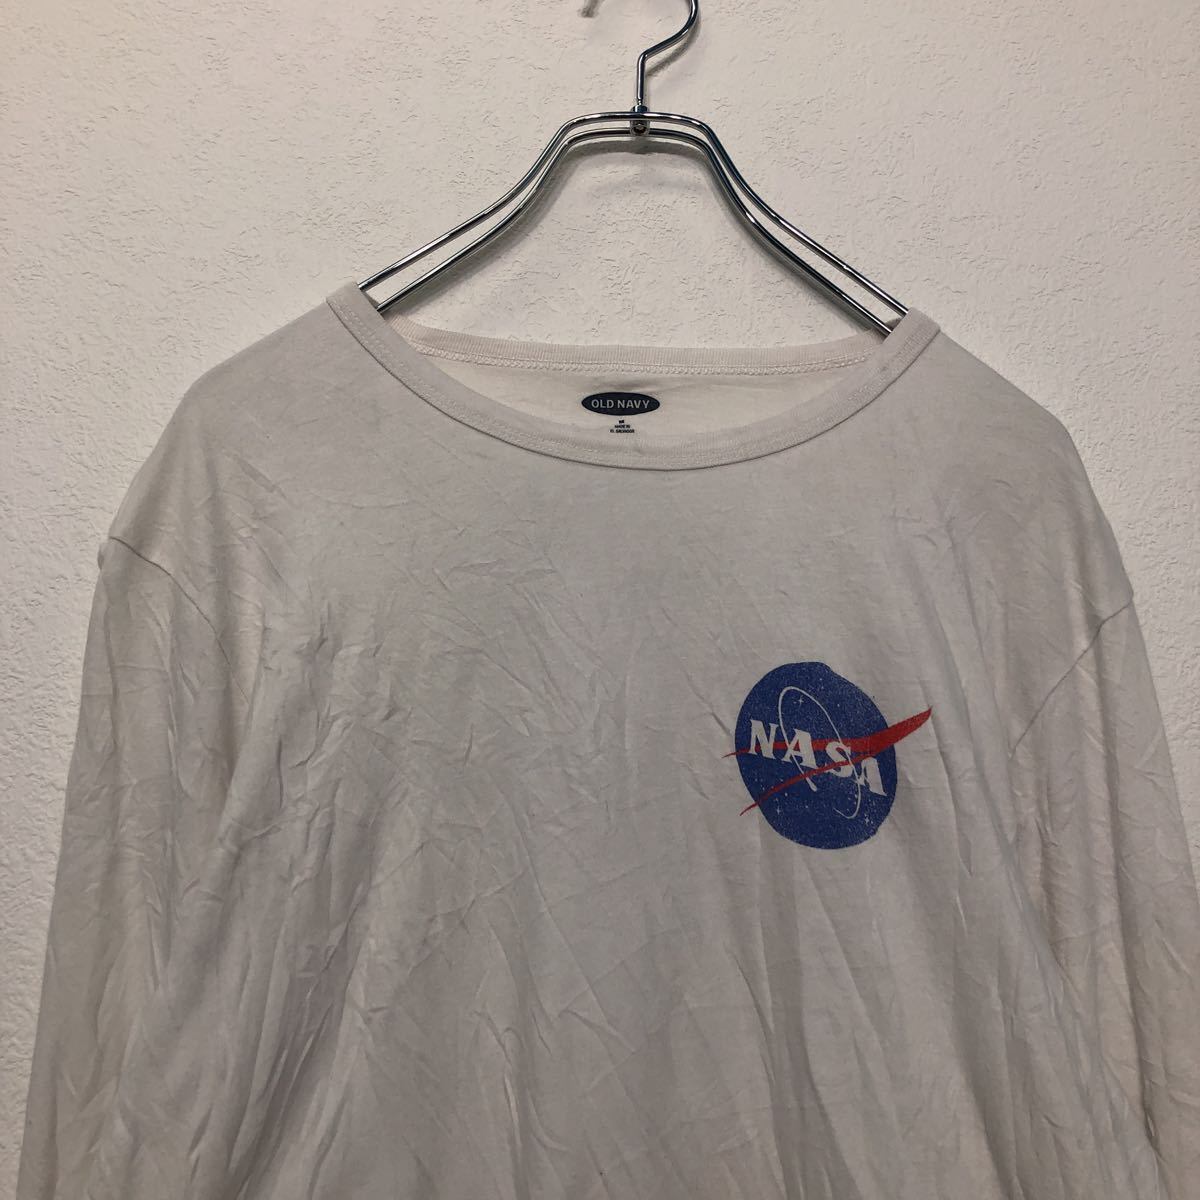 OLD NAVY プリント 長袖 Tシャツ M ホワイト オールドネイビー NASA